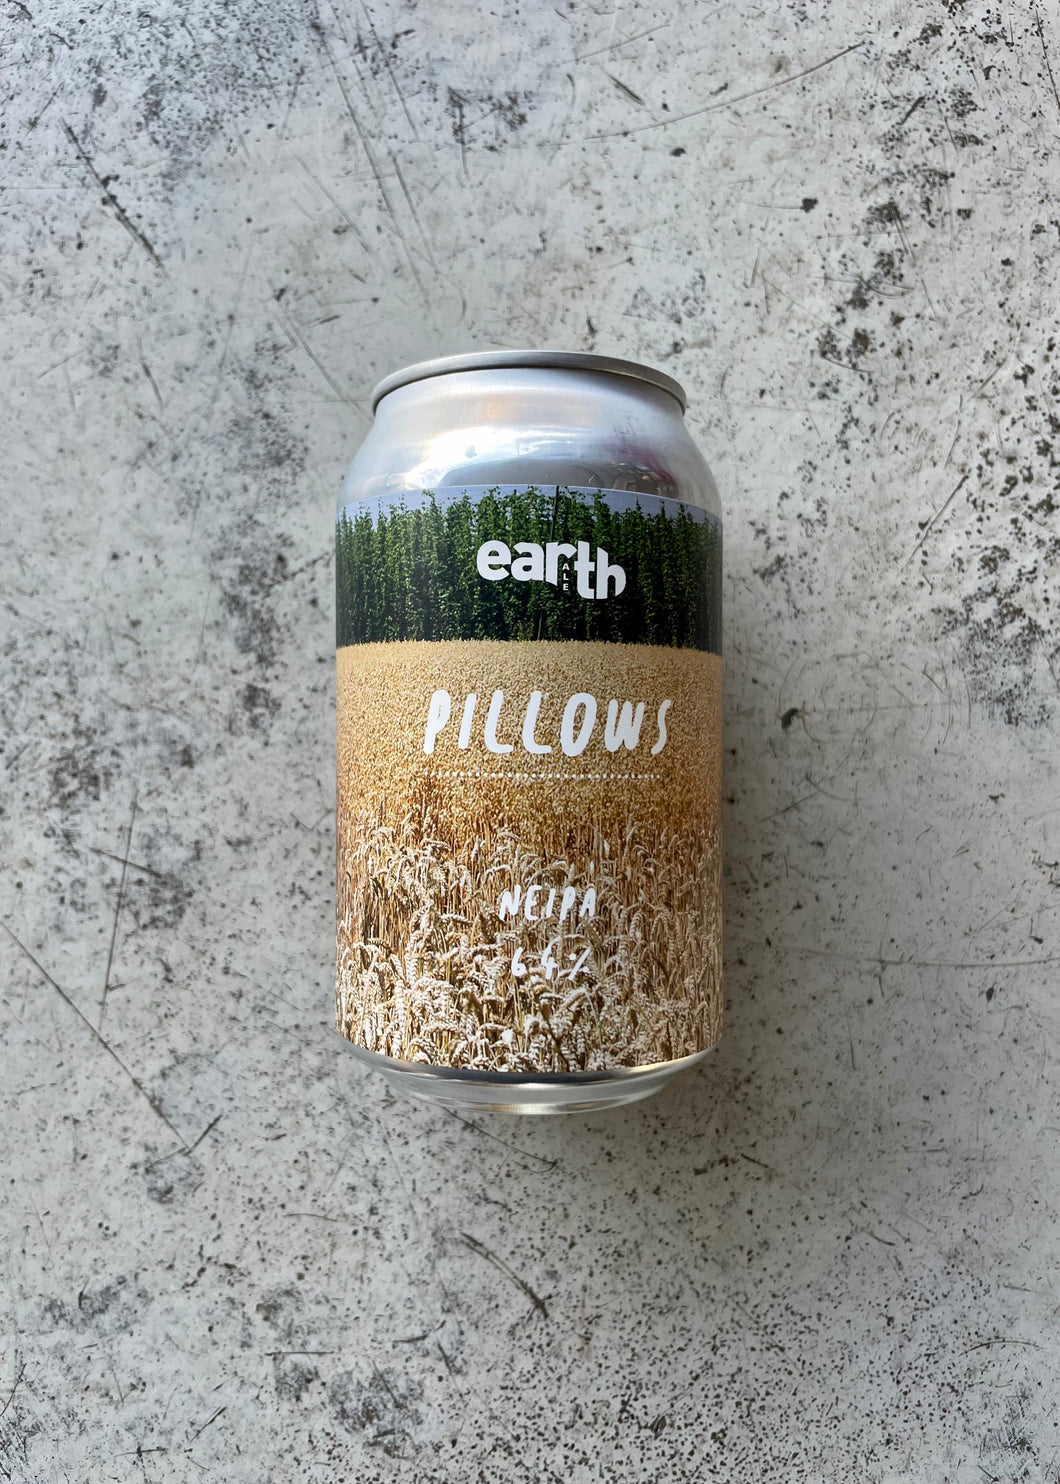 Earth Ale Pillows 6.4% (330ml)